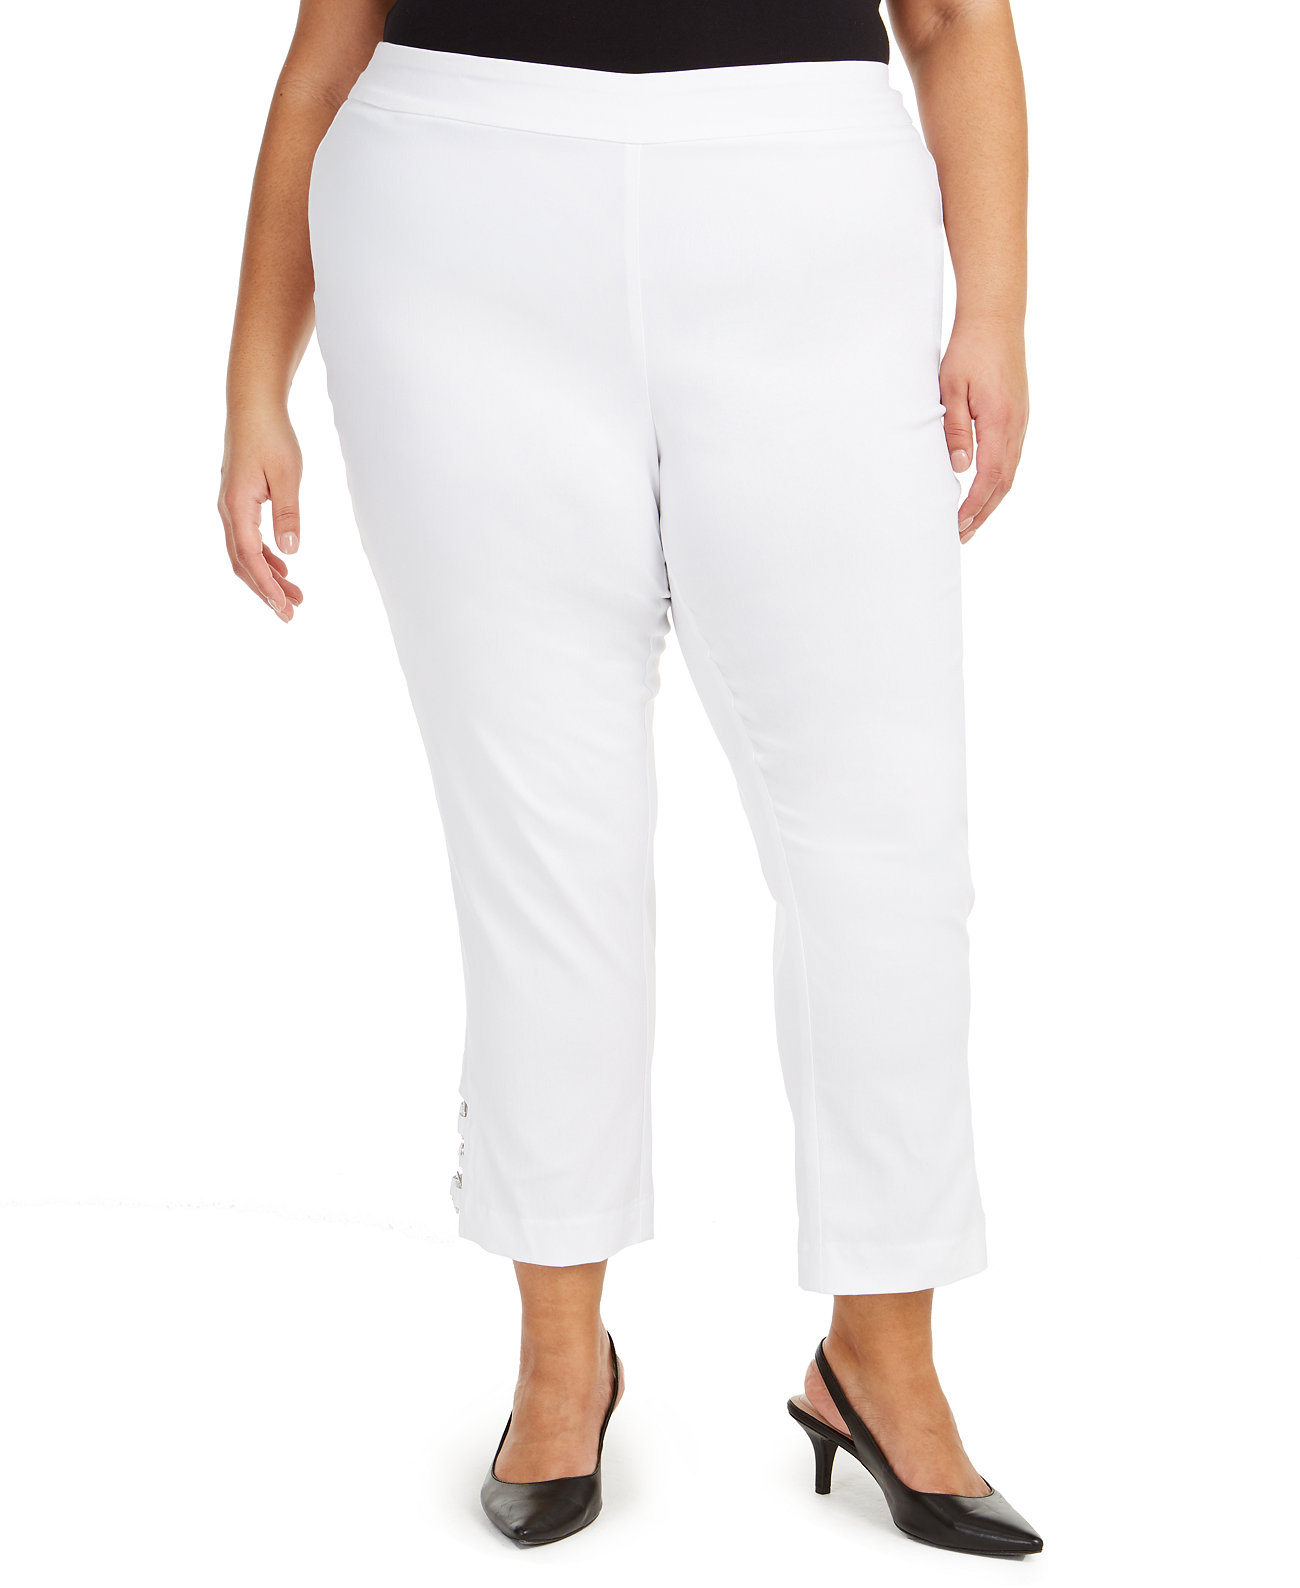 Узкие брюки-щиколотки с регулируемым размером живота плюс размер, созданные для Macy's J&M Collection